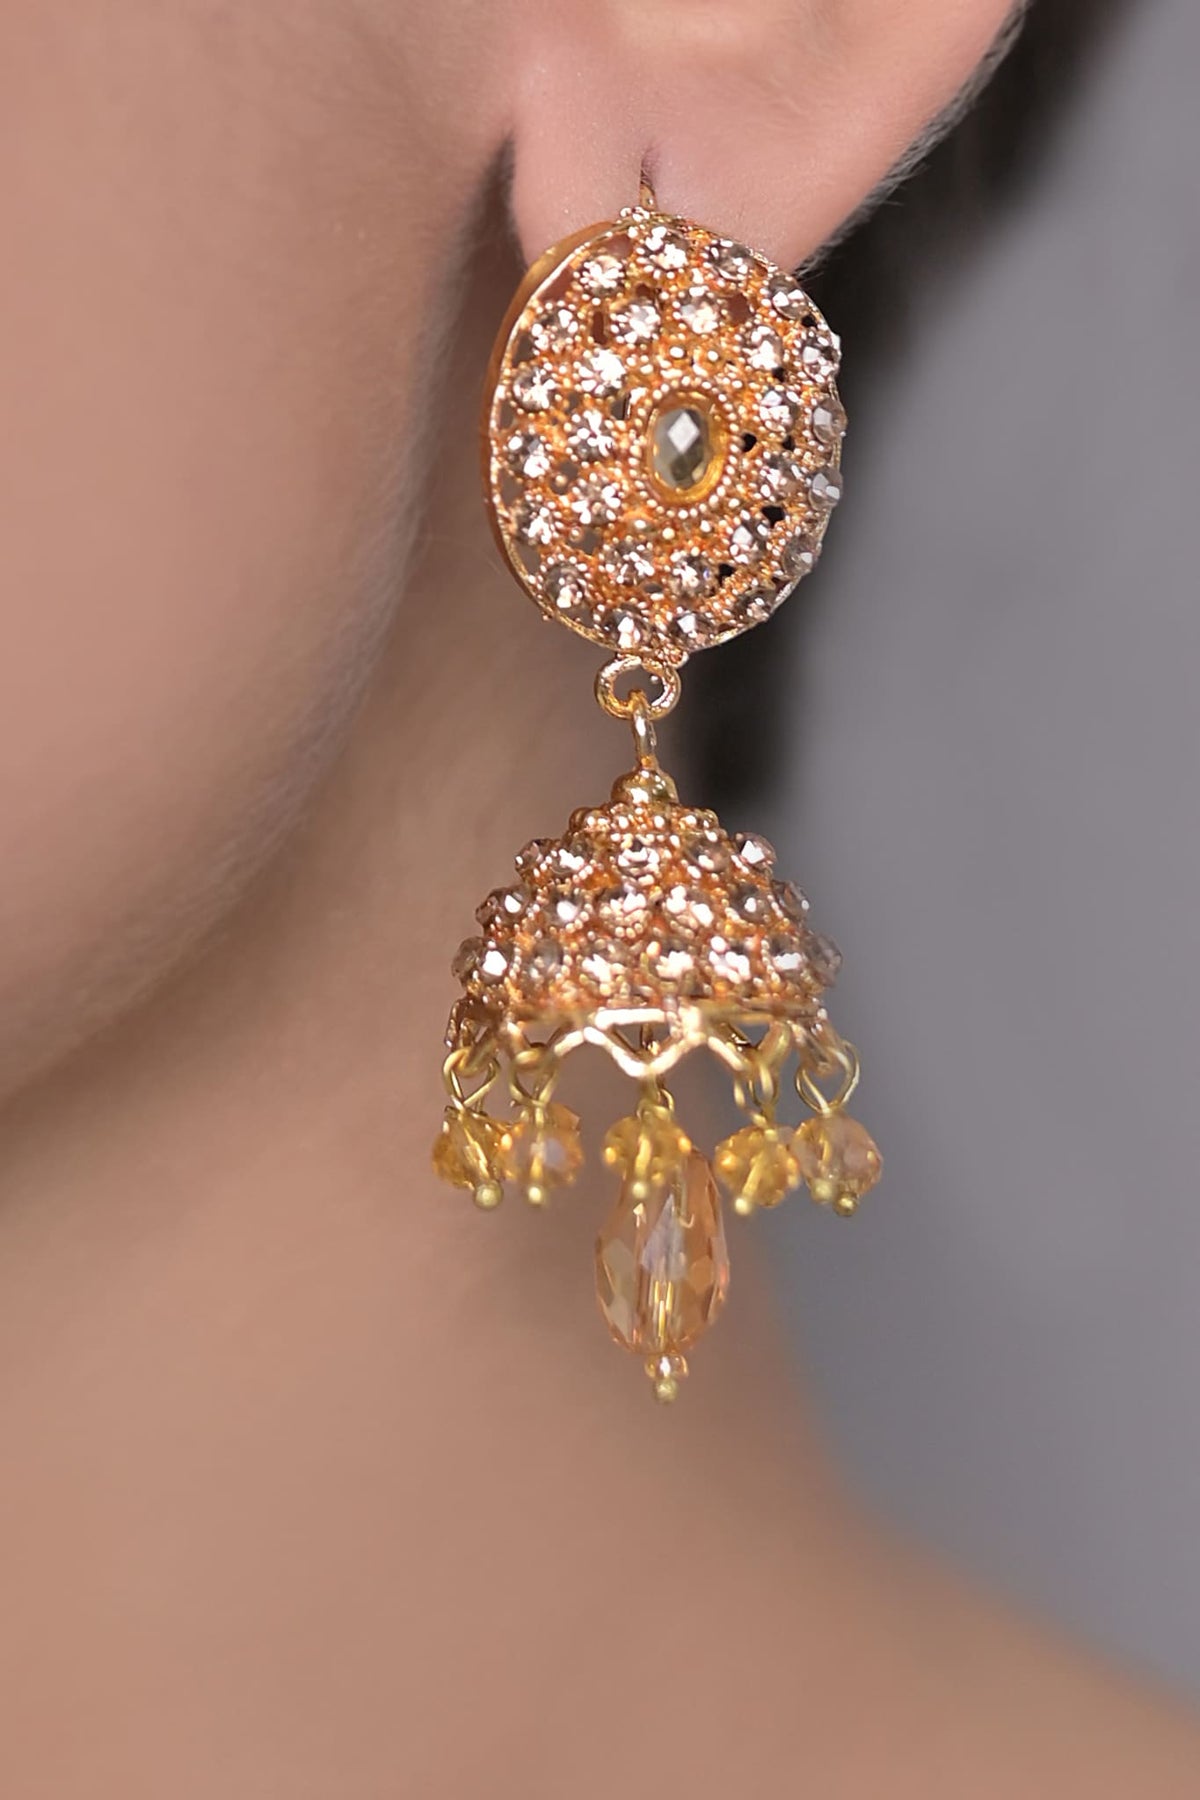 Earrings OLJ-156-Golden And Champagne